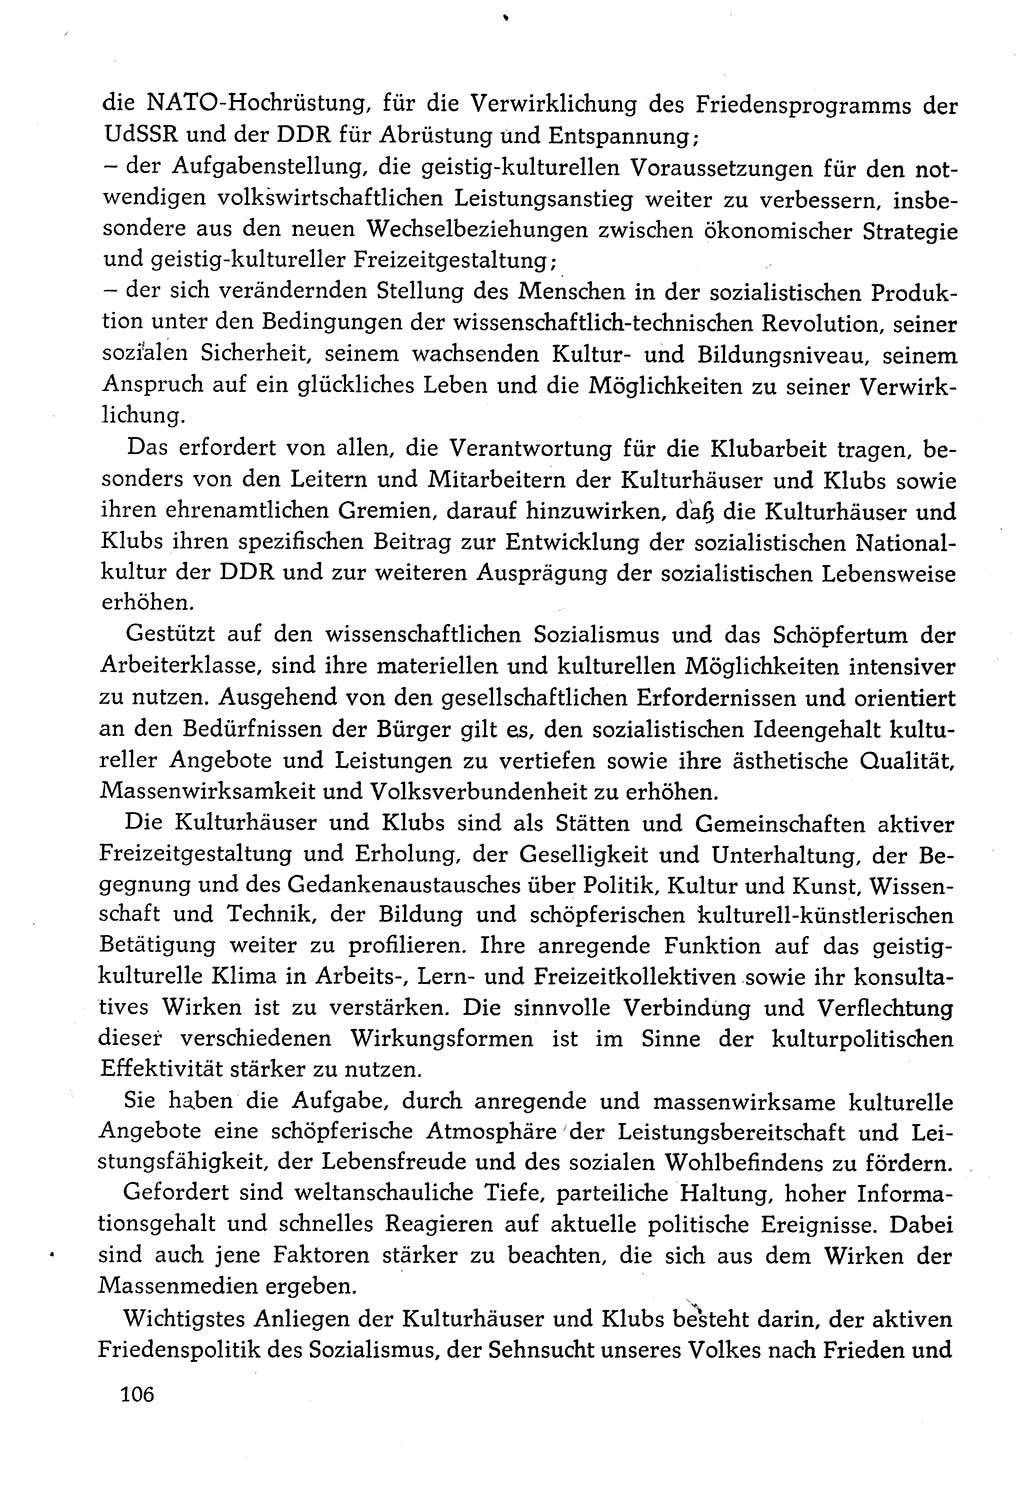 Dokumente der Sozialistischen Einheitspartei Deutschlands (SED) [Deutsche Demokratische Republik (DDR)] 1982-1983, Seite 106 (Dok. SED DDR 1982-1983, S. 106)